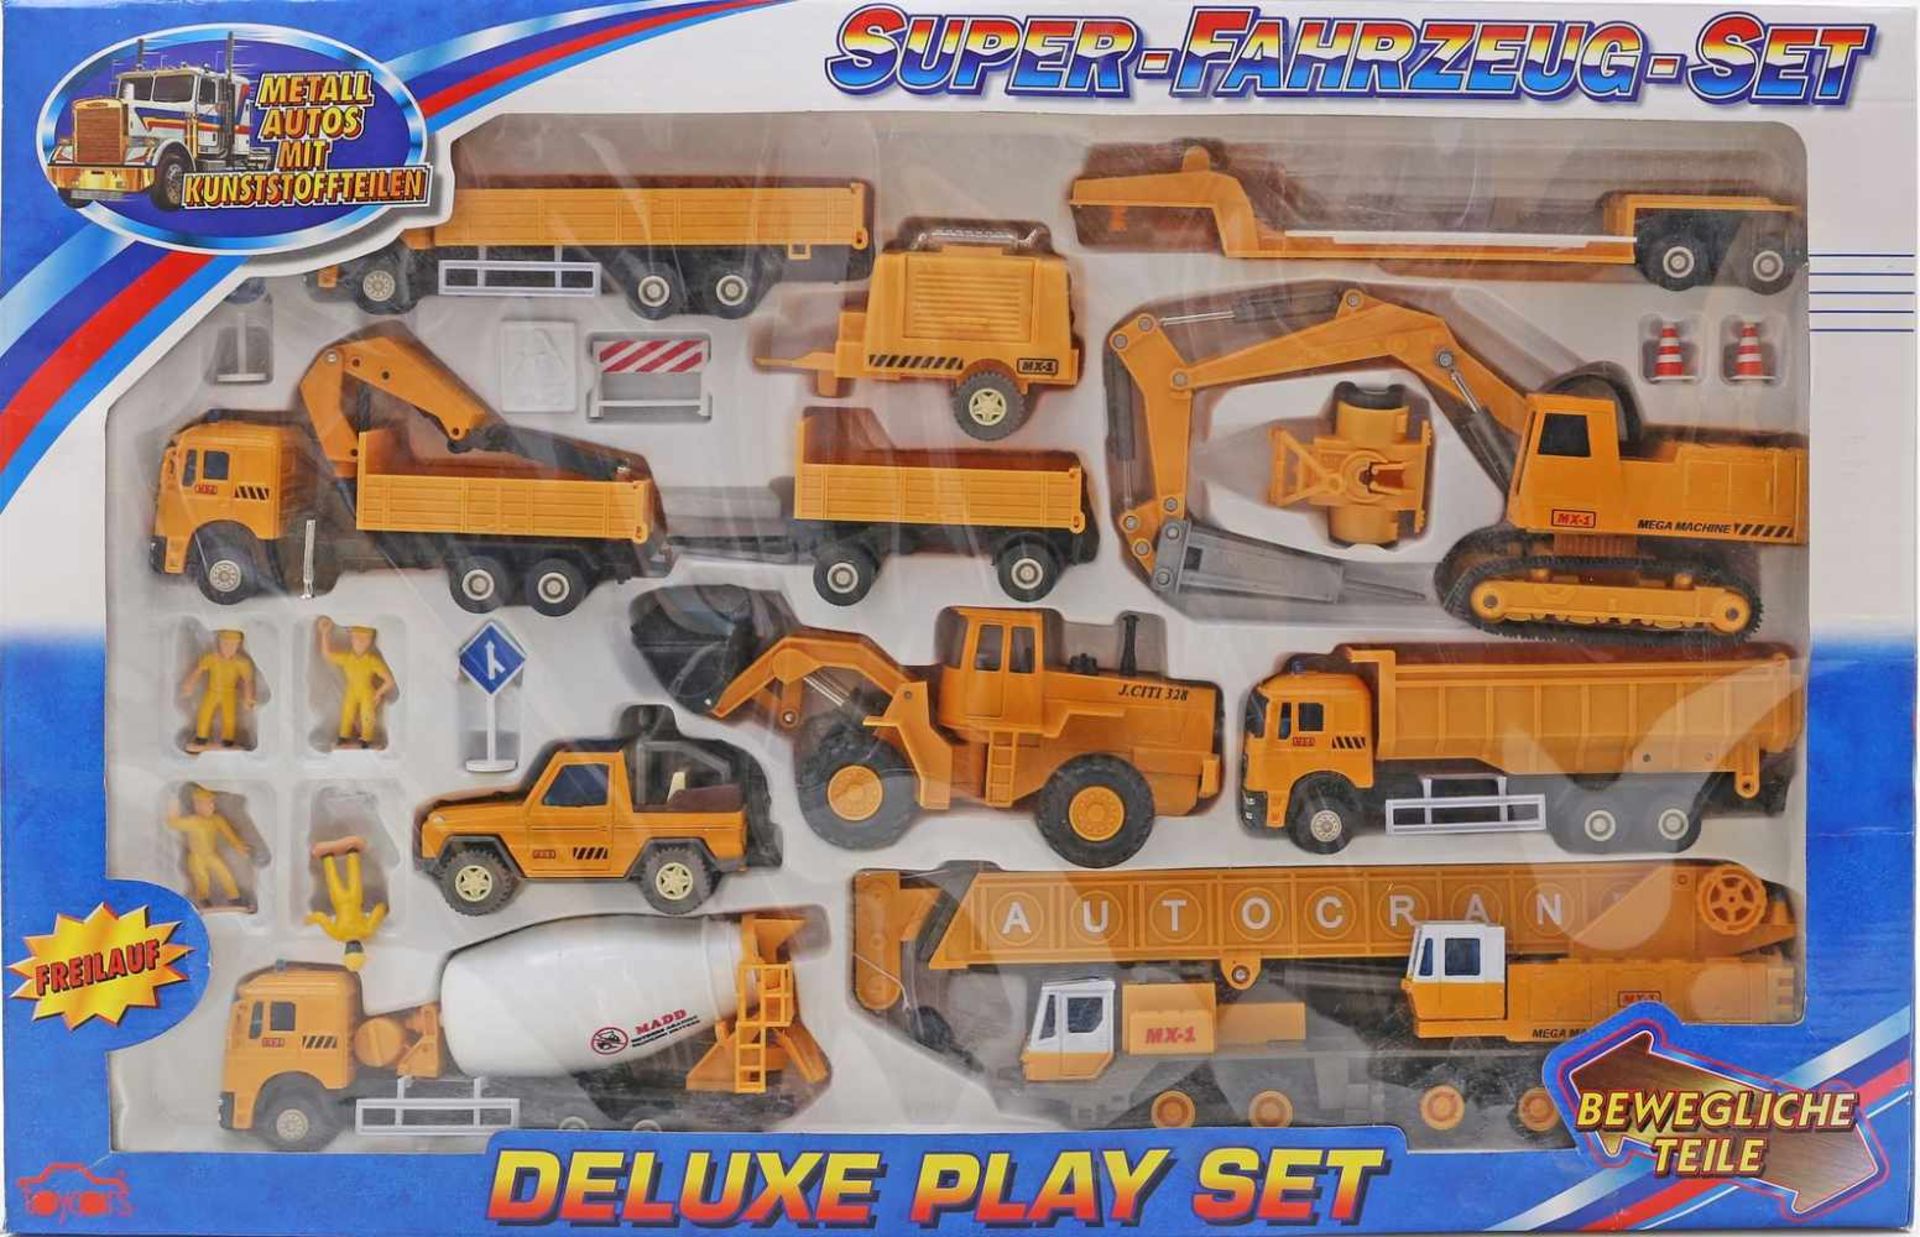 Super-Fahrzeug-Set,mit div. Baufahrzeugen und Figuren. In Originalverpackung. Unbespielt.